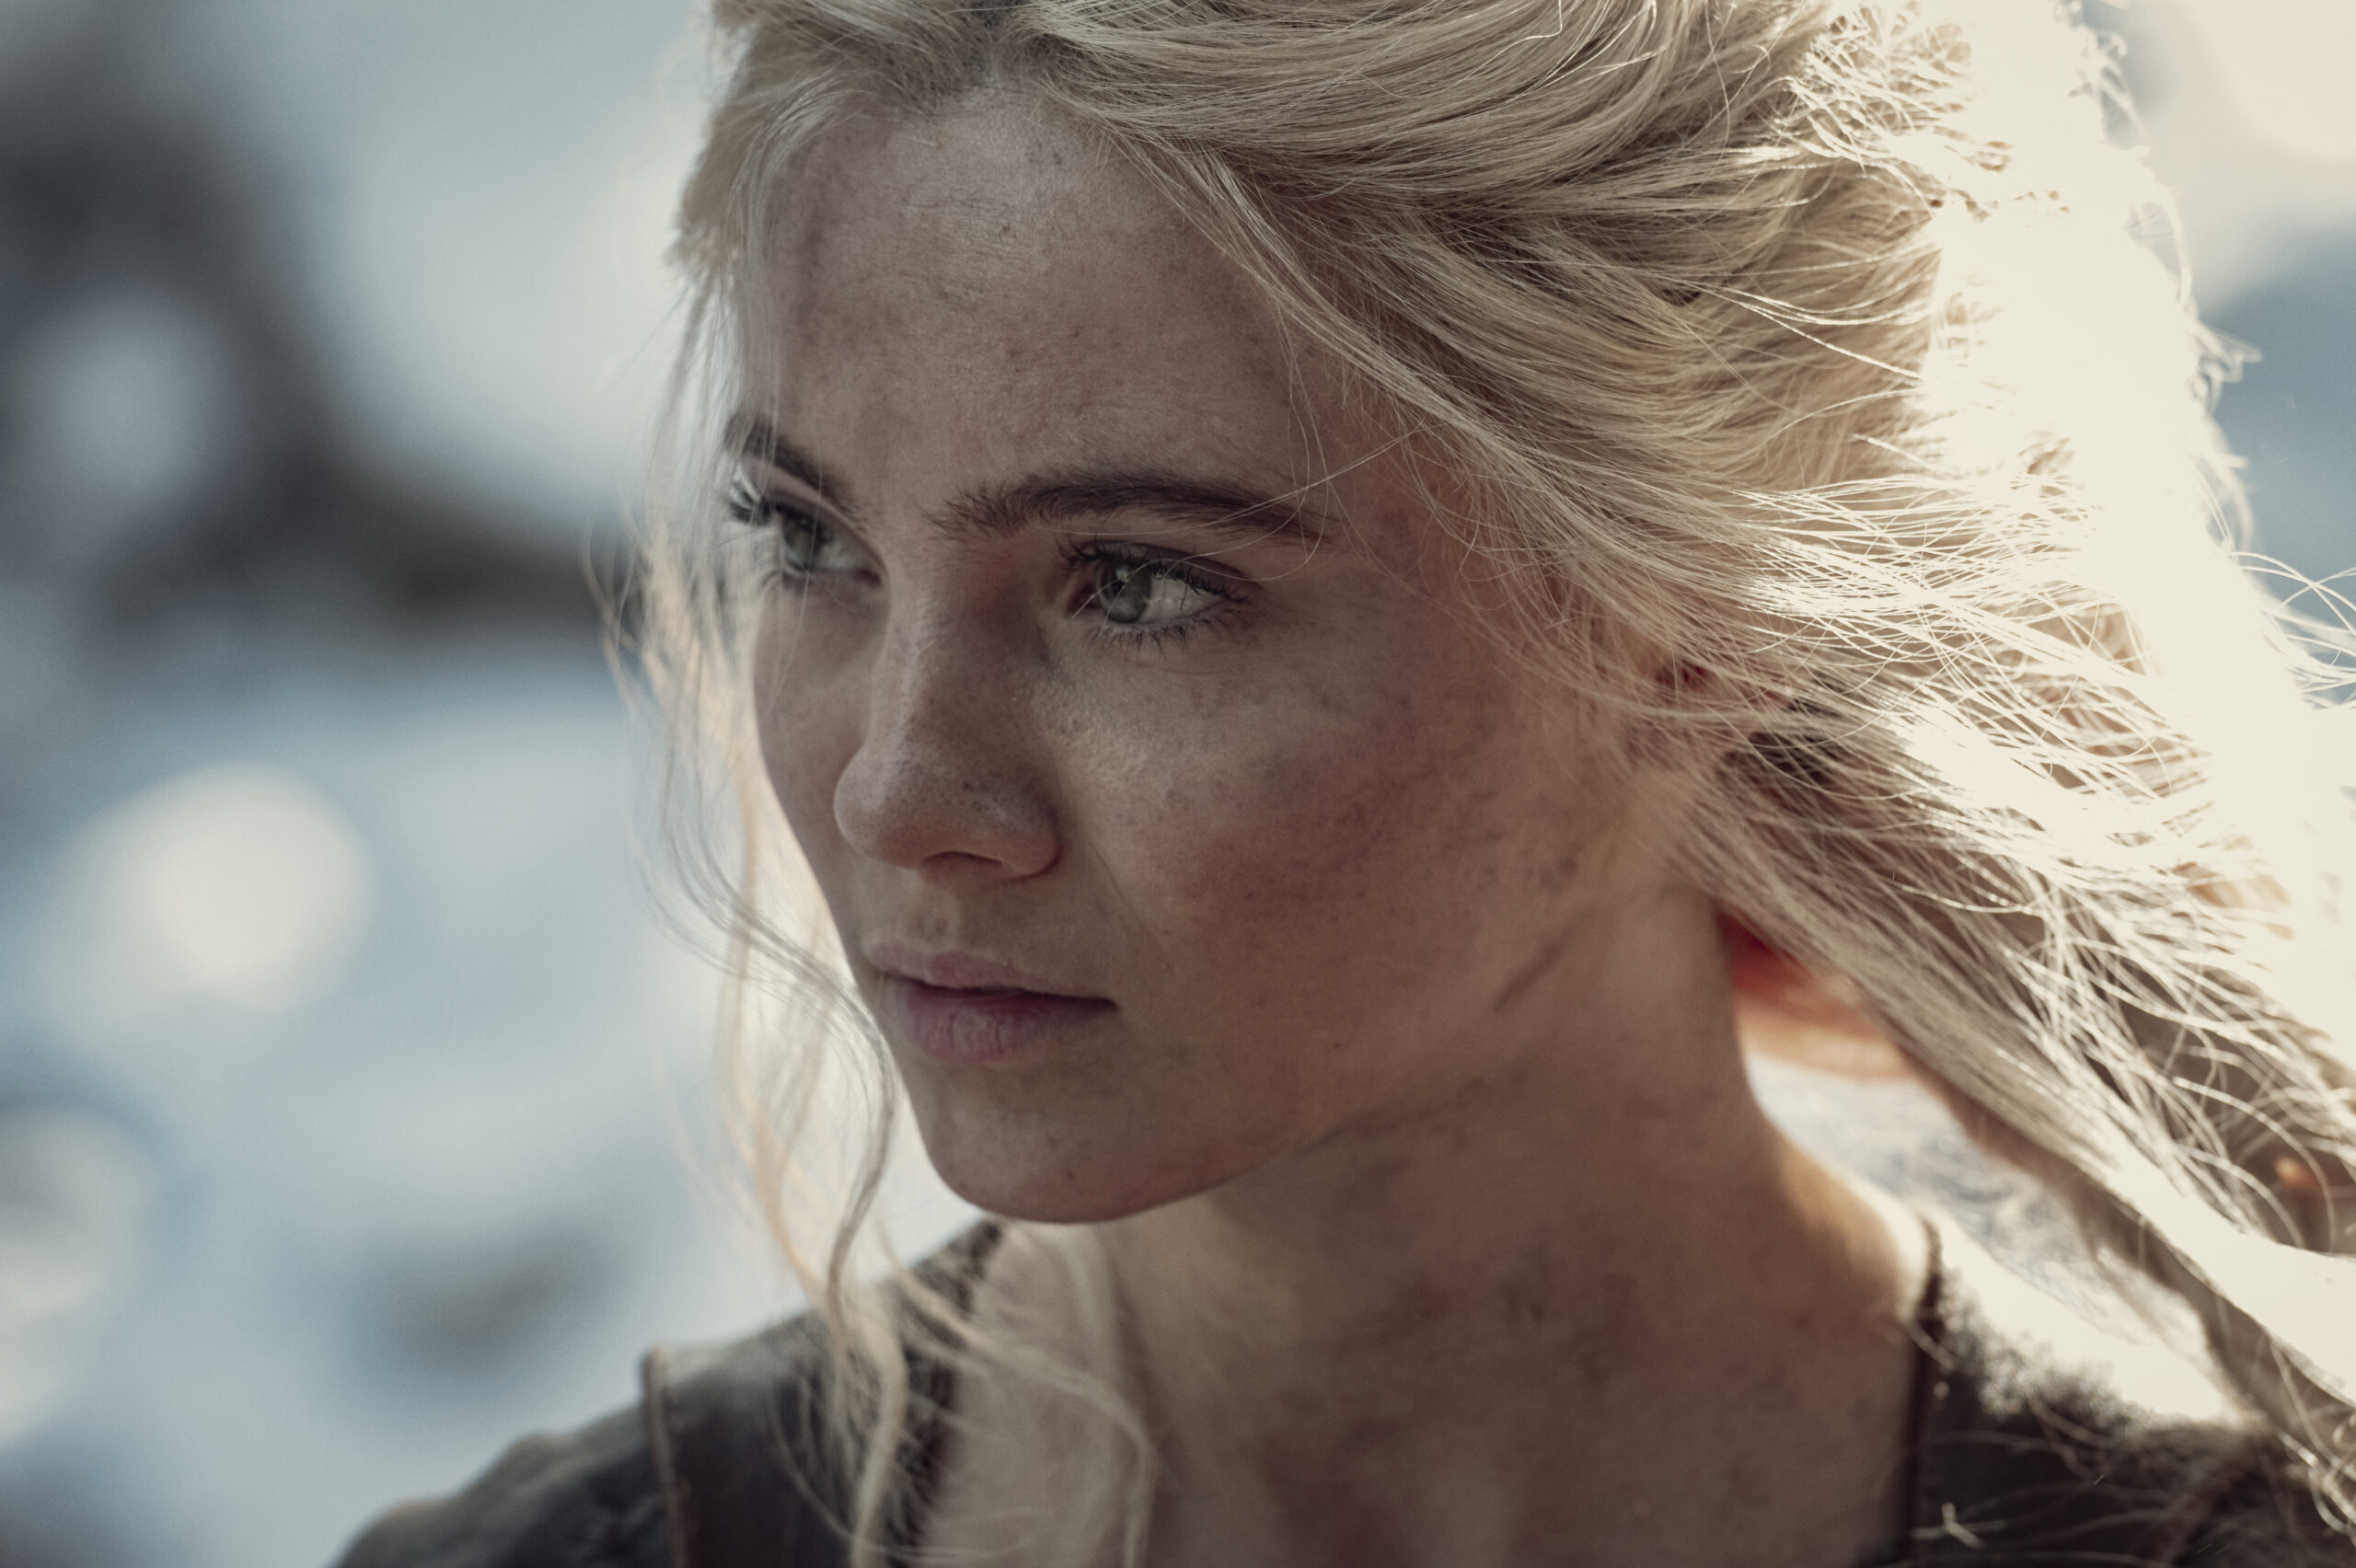 Ciri (Freya Allan) steadies herself in The Witcher Season 2 Episode 3 "What Is Lost" (2021) via Netflix